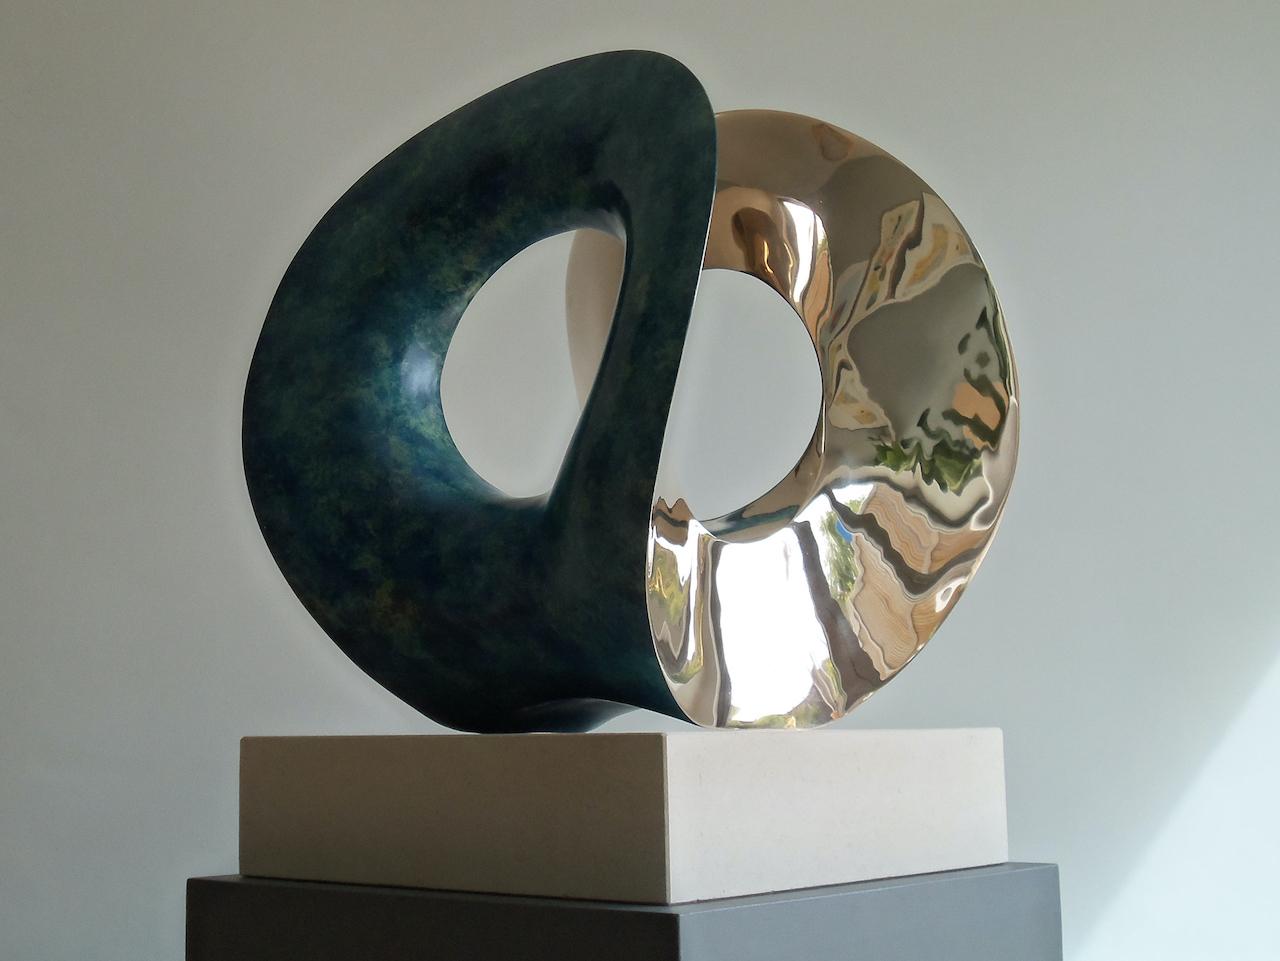 Orchid' du sculpteur britannique Thomas Joynes est le fruit d'une longue fascination de l'artiste pour les œuvres de Naum Gabo et son rôle dans le mouvement constructiviste. L'une des pièces de Gabo qui l'a particulièrement influencé depuis